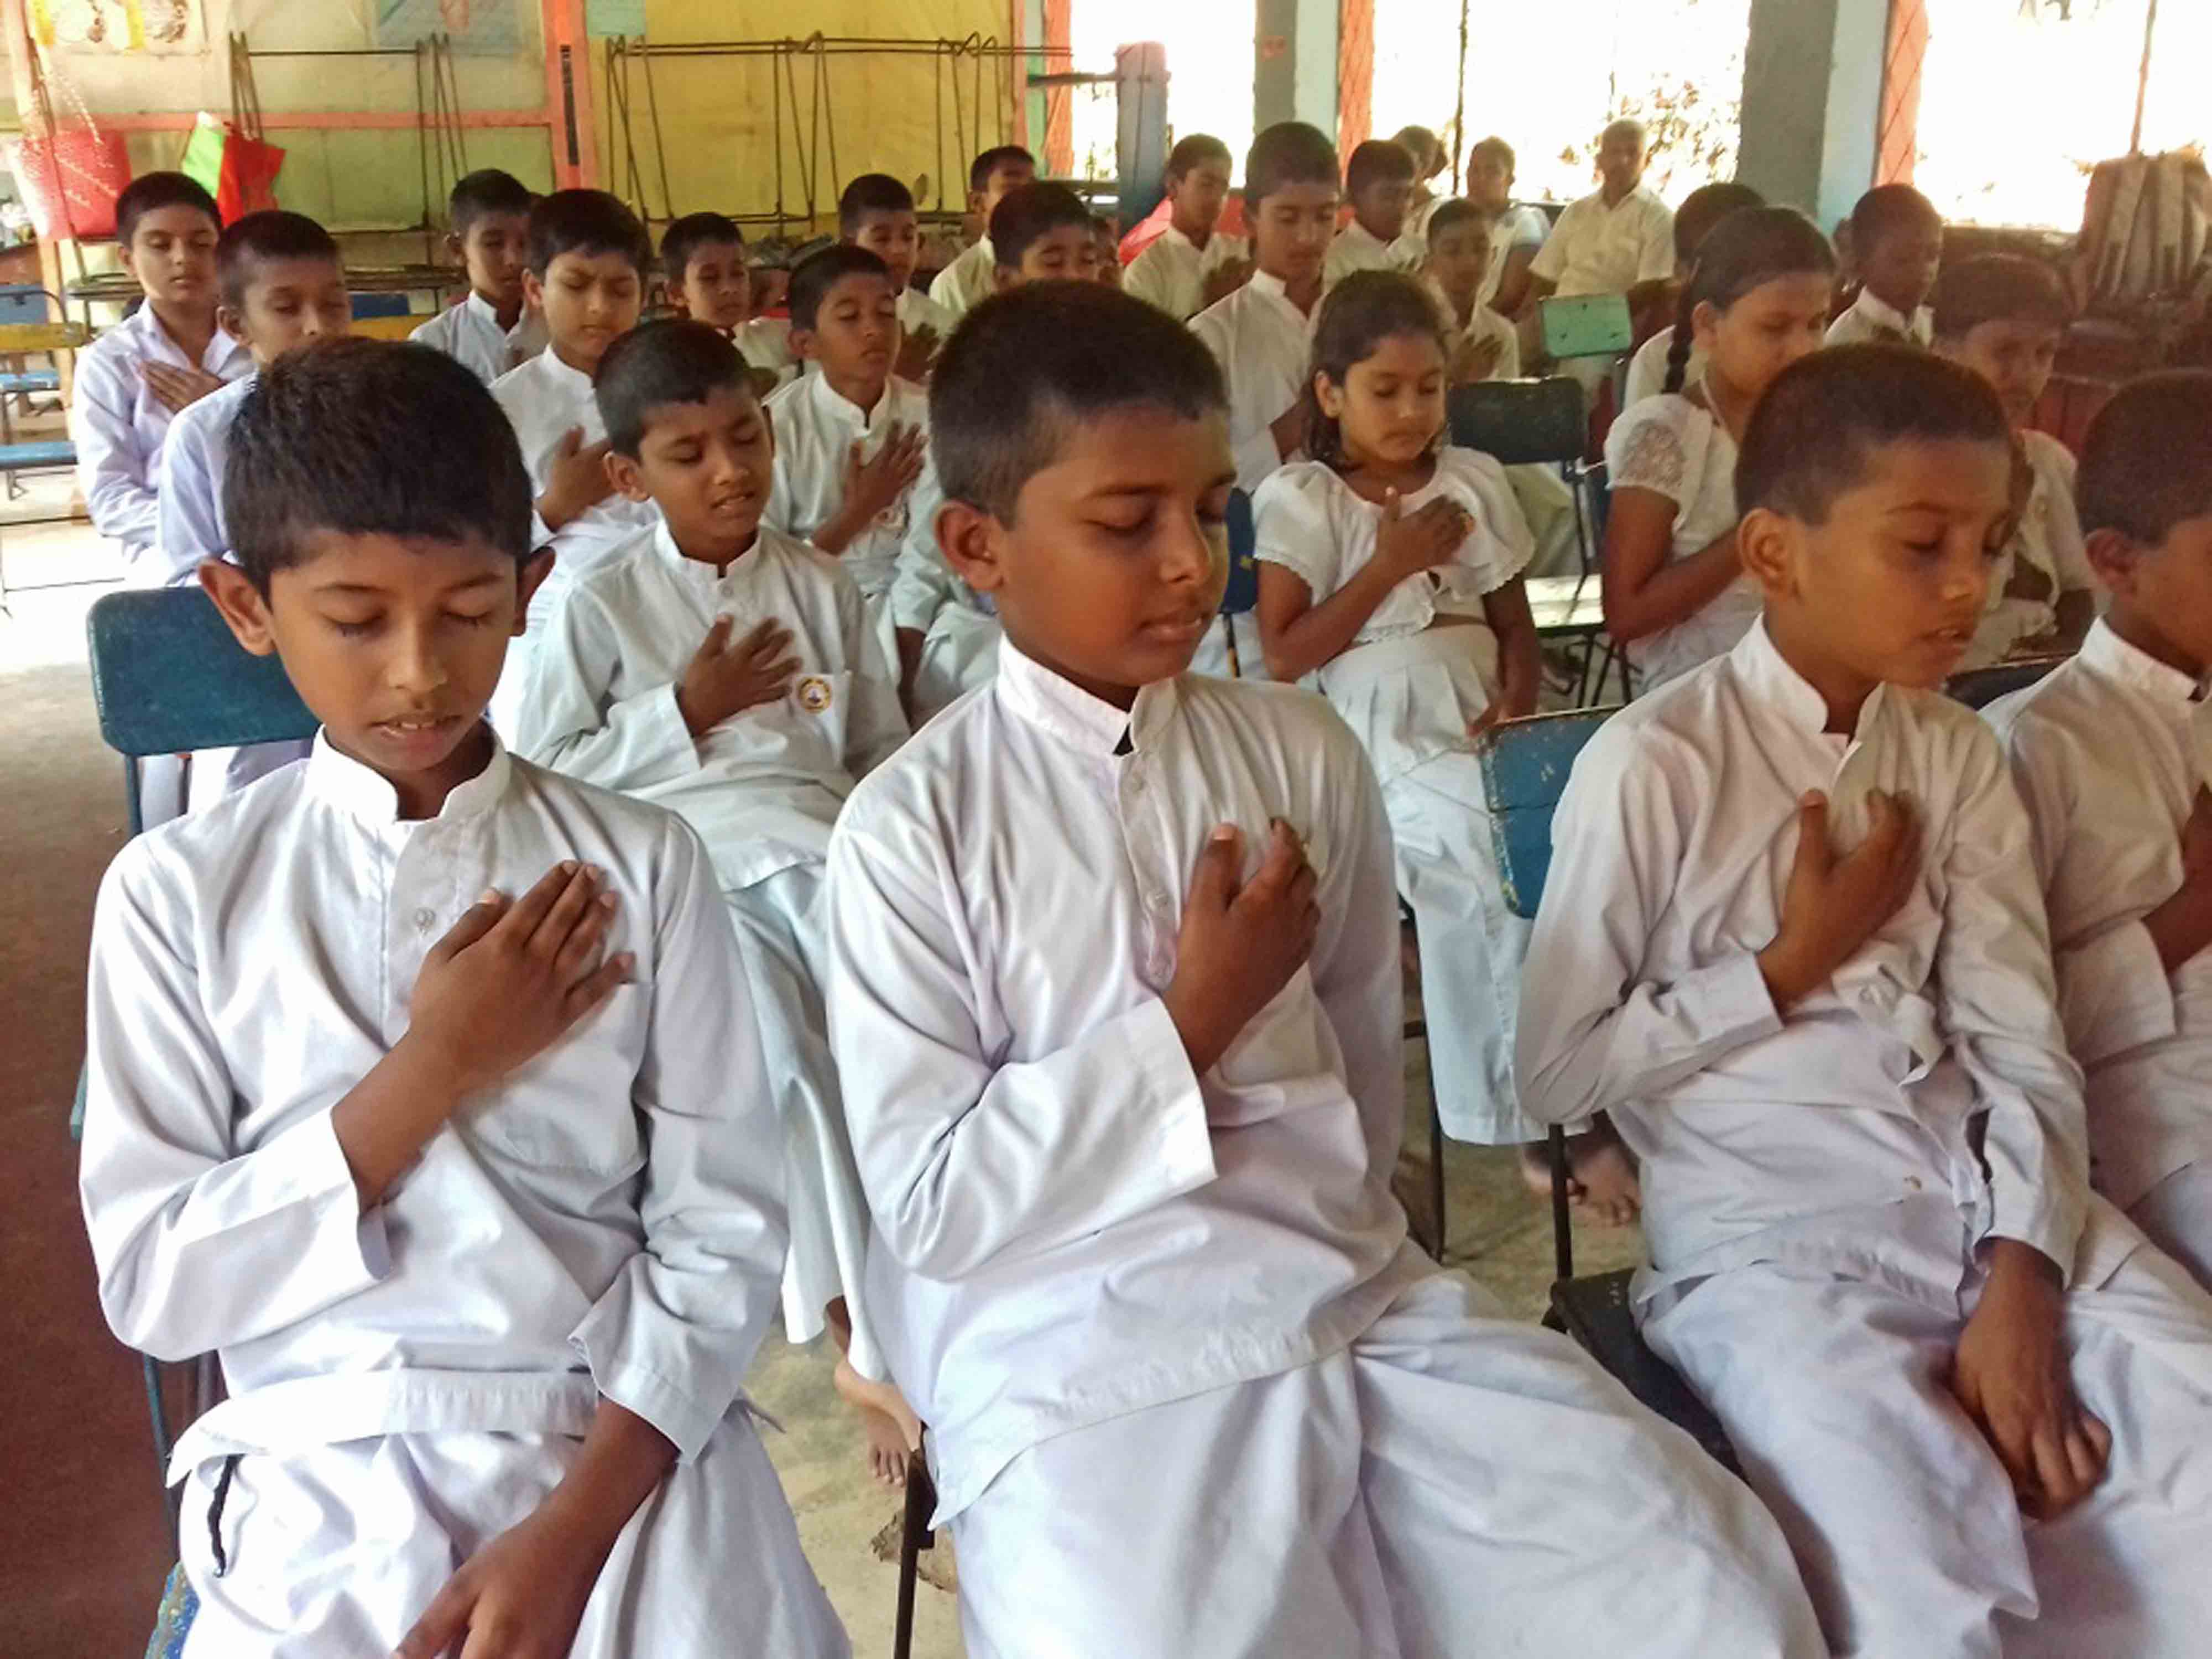 Mindfulness for Sri Rathanajothi Sunday School, Balawathgama